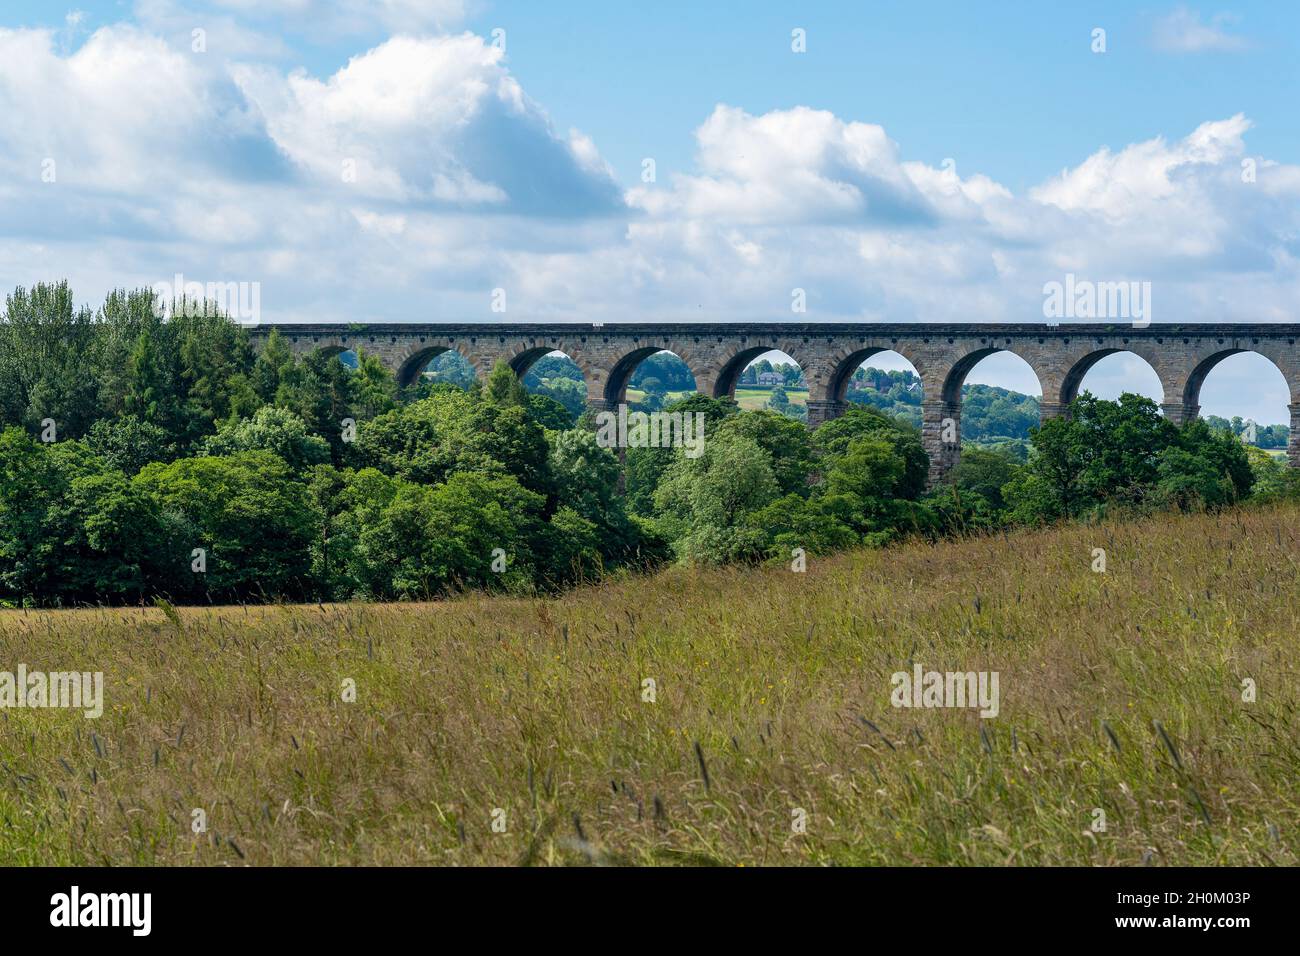 Traverser la Crimple Valley à Harrogate est un viaduc de pierre avec de nombreuses arches, North Yorkshire, Angleterre, Royaume-Uni. Banque D'Images